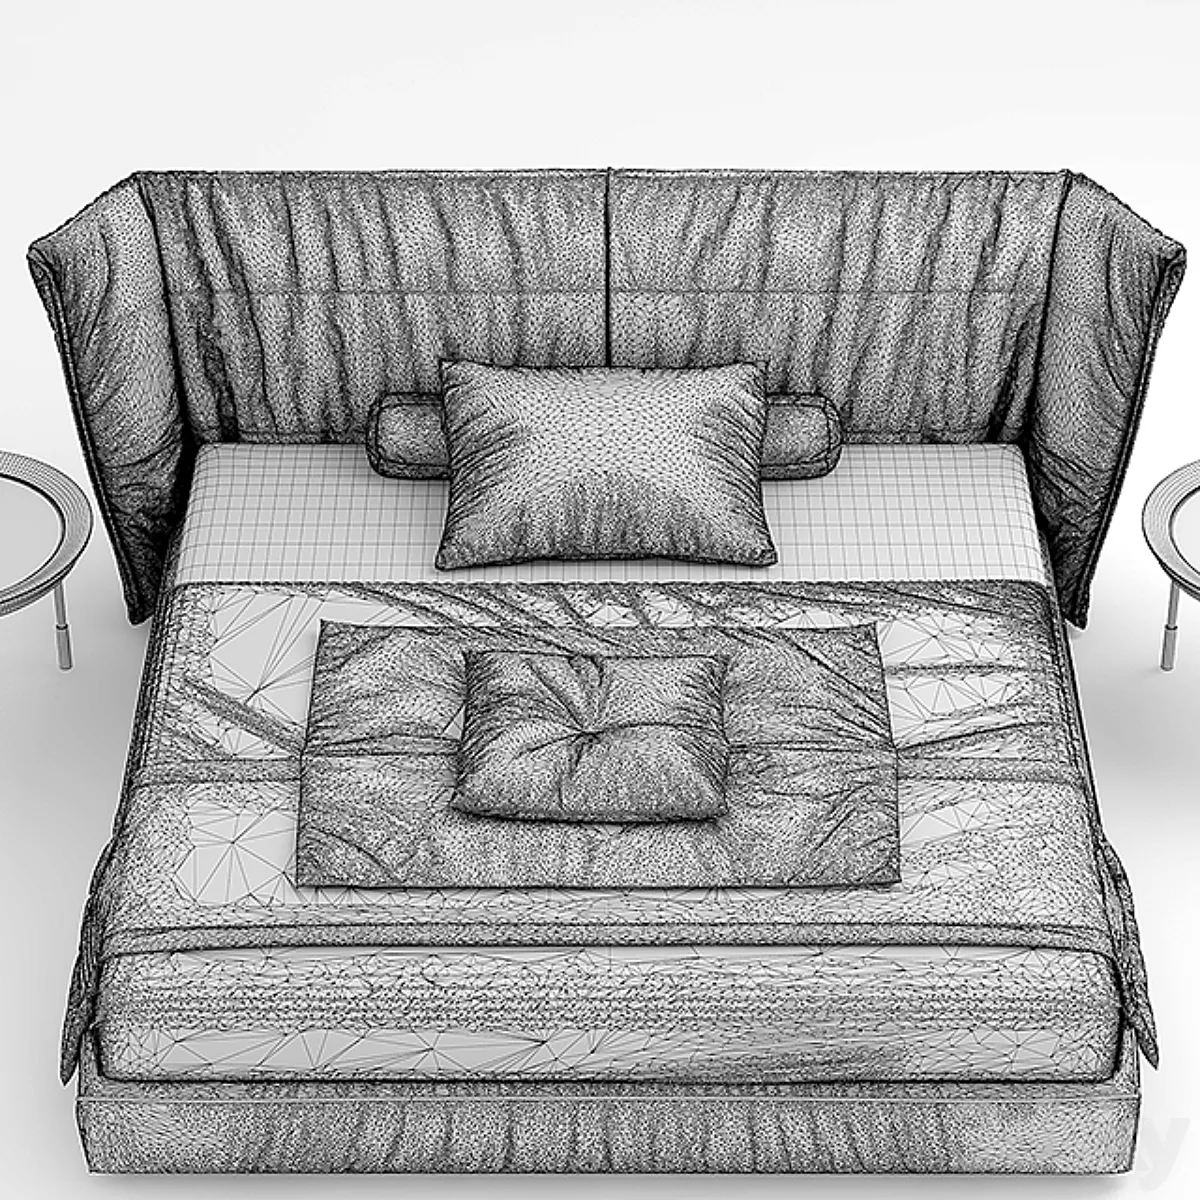 مدل سه بعدی تخت خواب مدرن 50 - 6